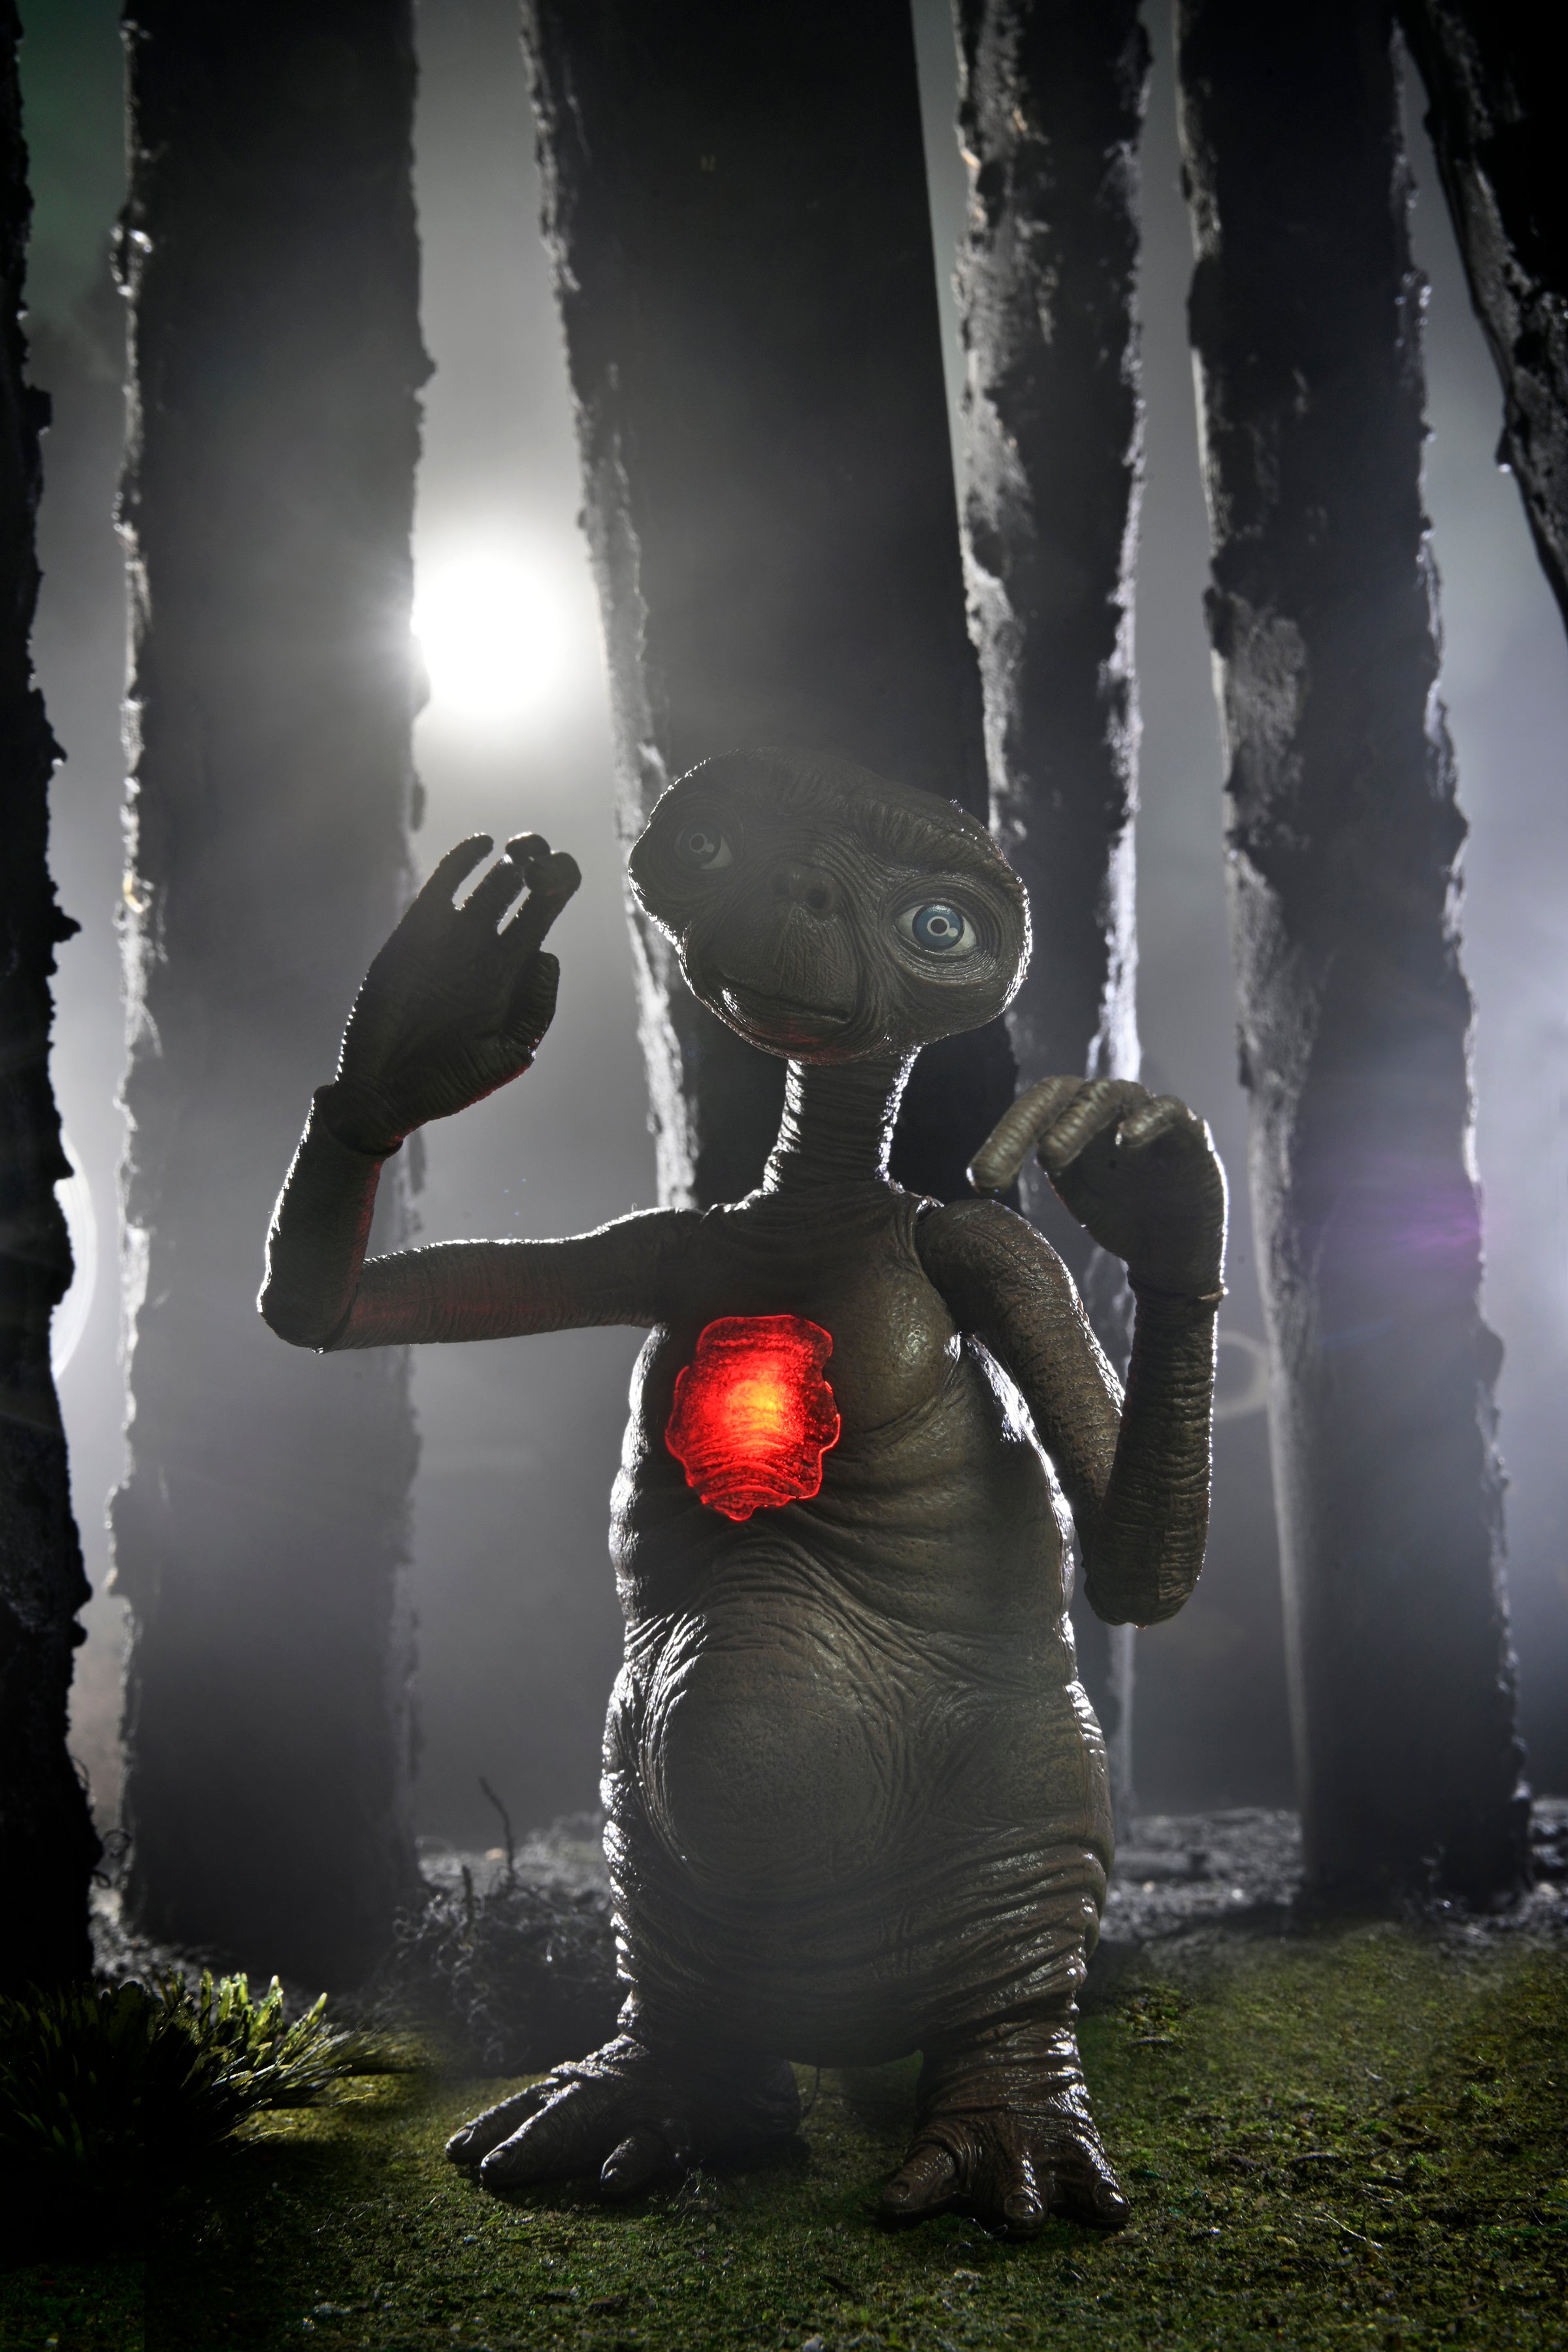 Figura E.T. El Extraterrestre Ultimate E.T. 40 Aniversario 12 cm